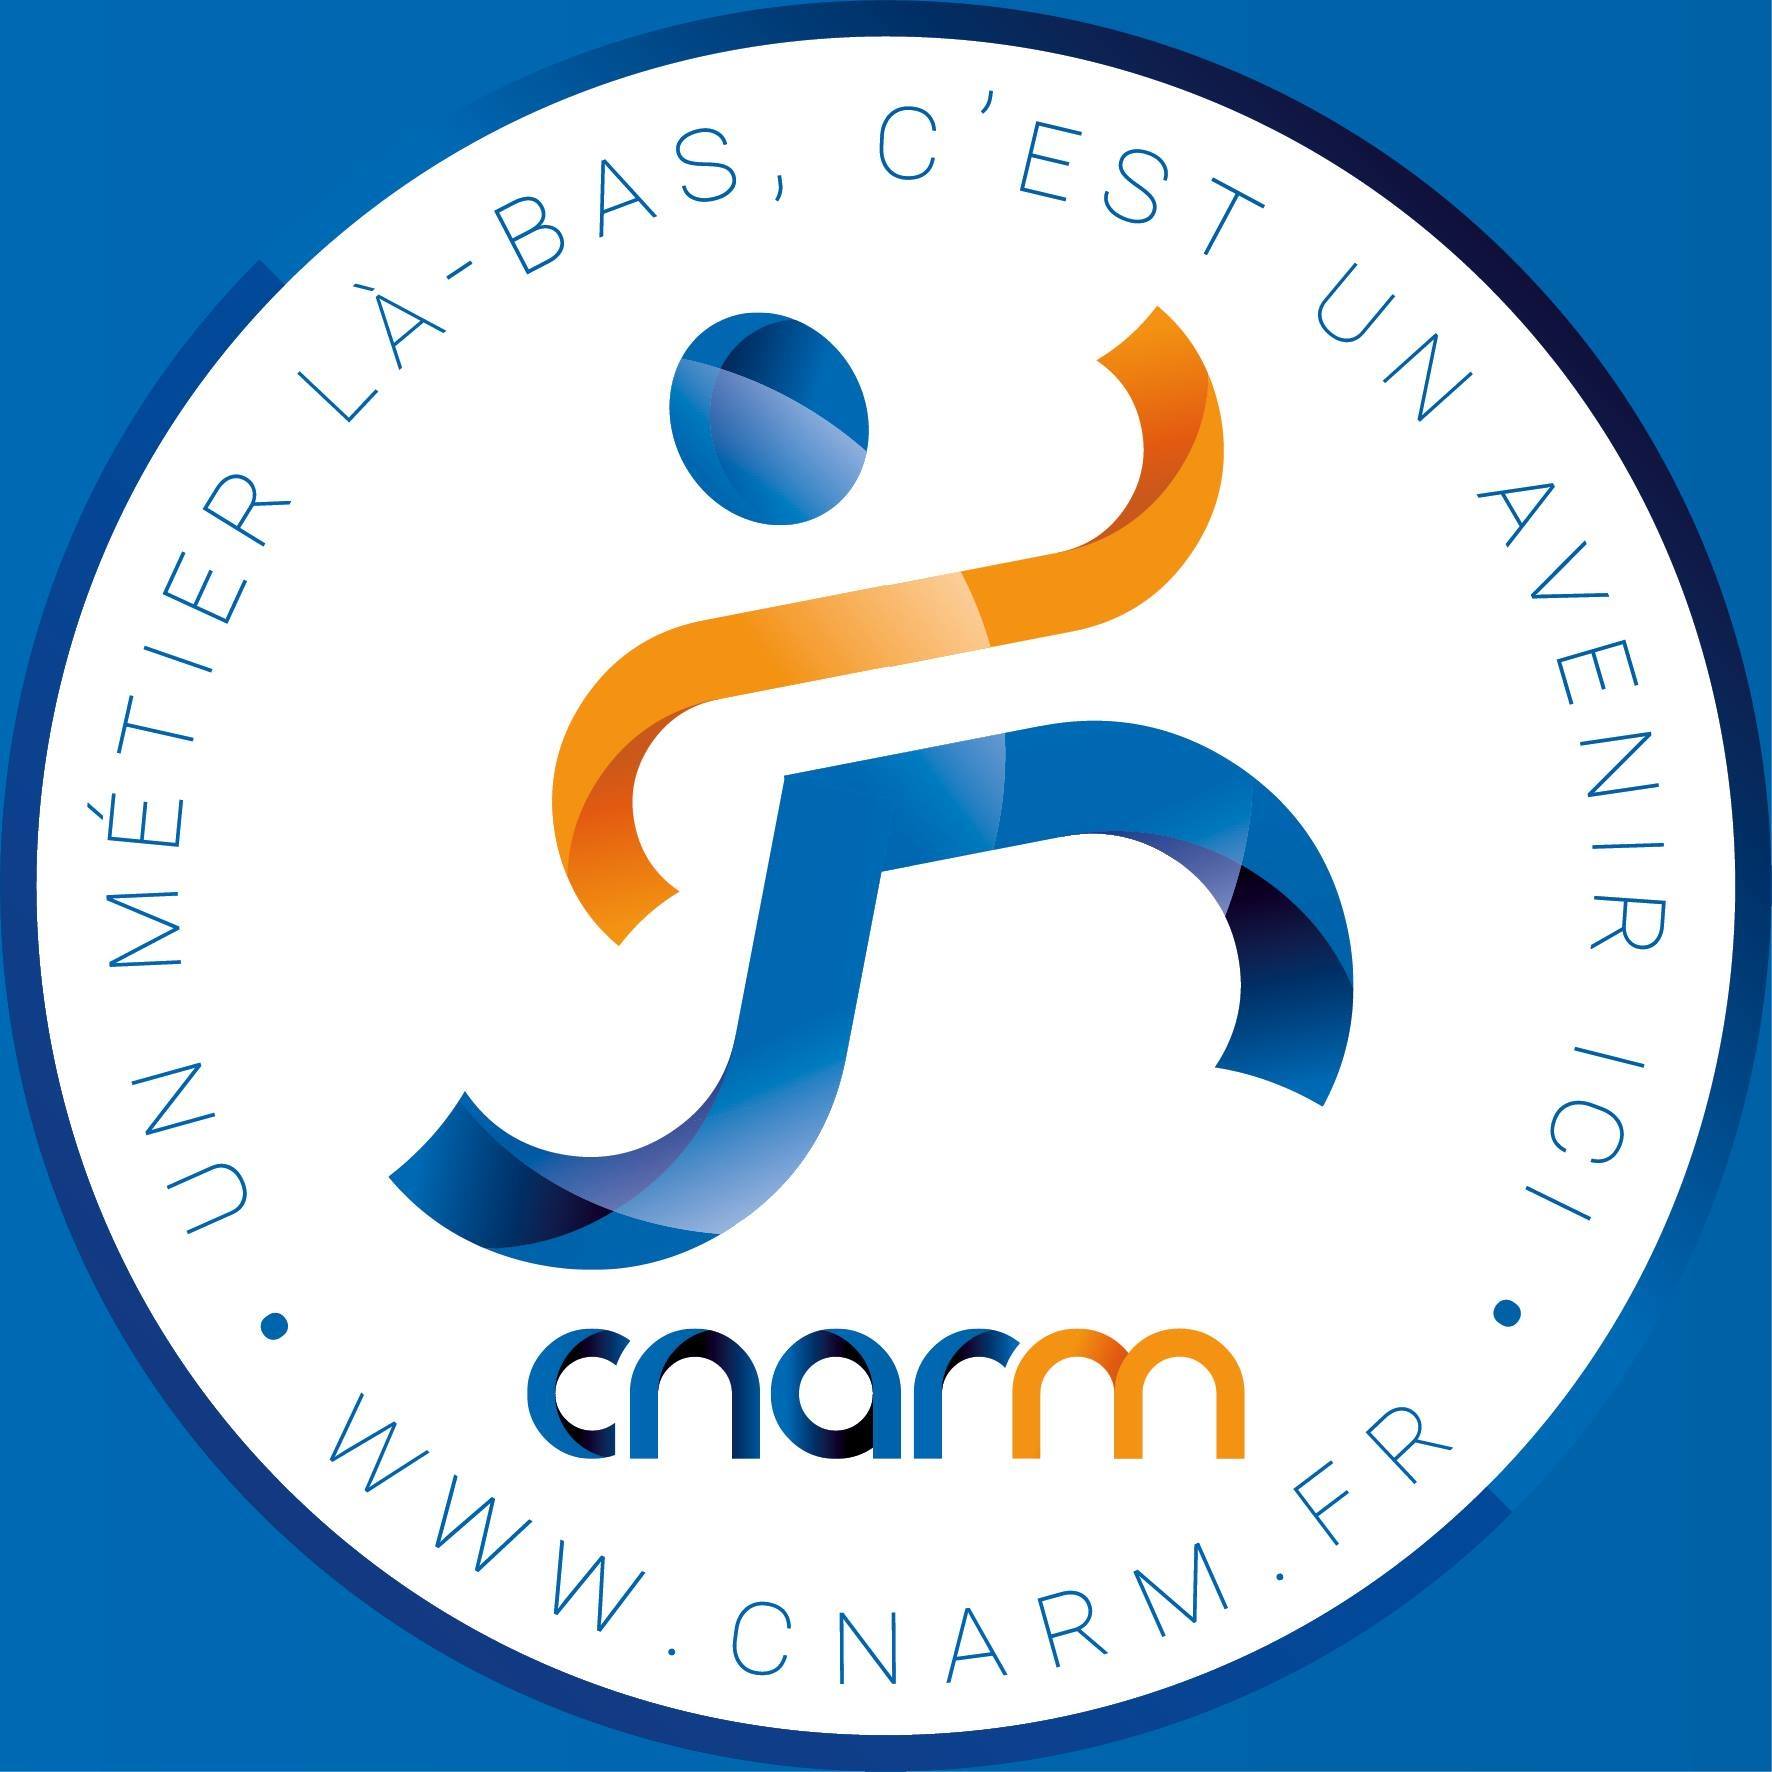 cnarm logo